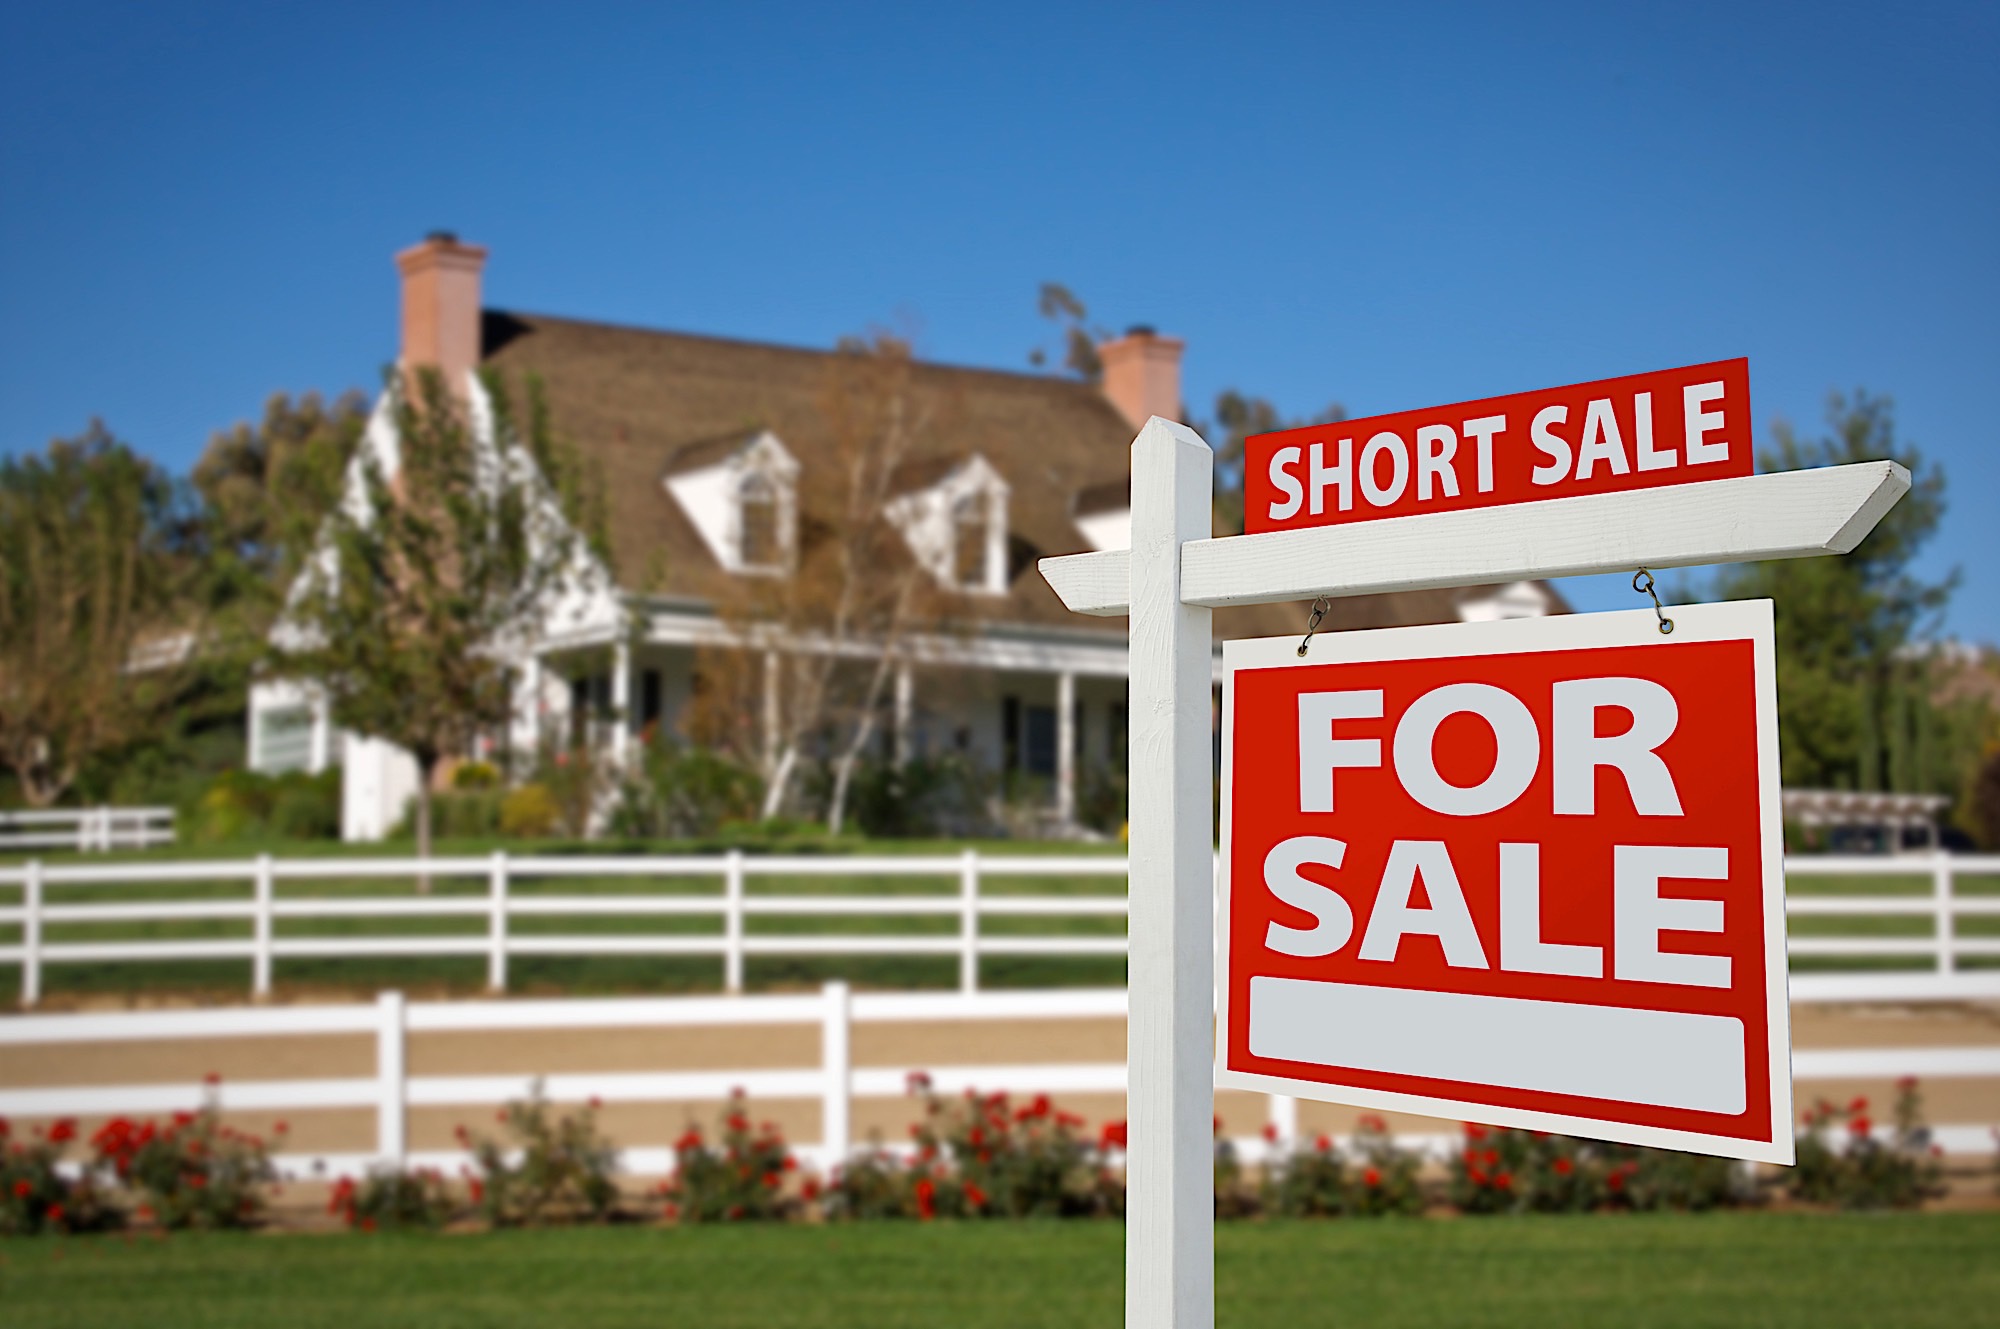 Short sale properties